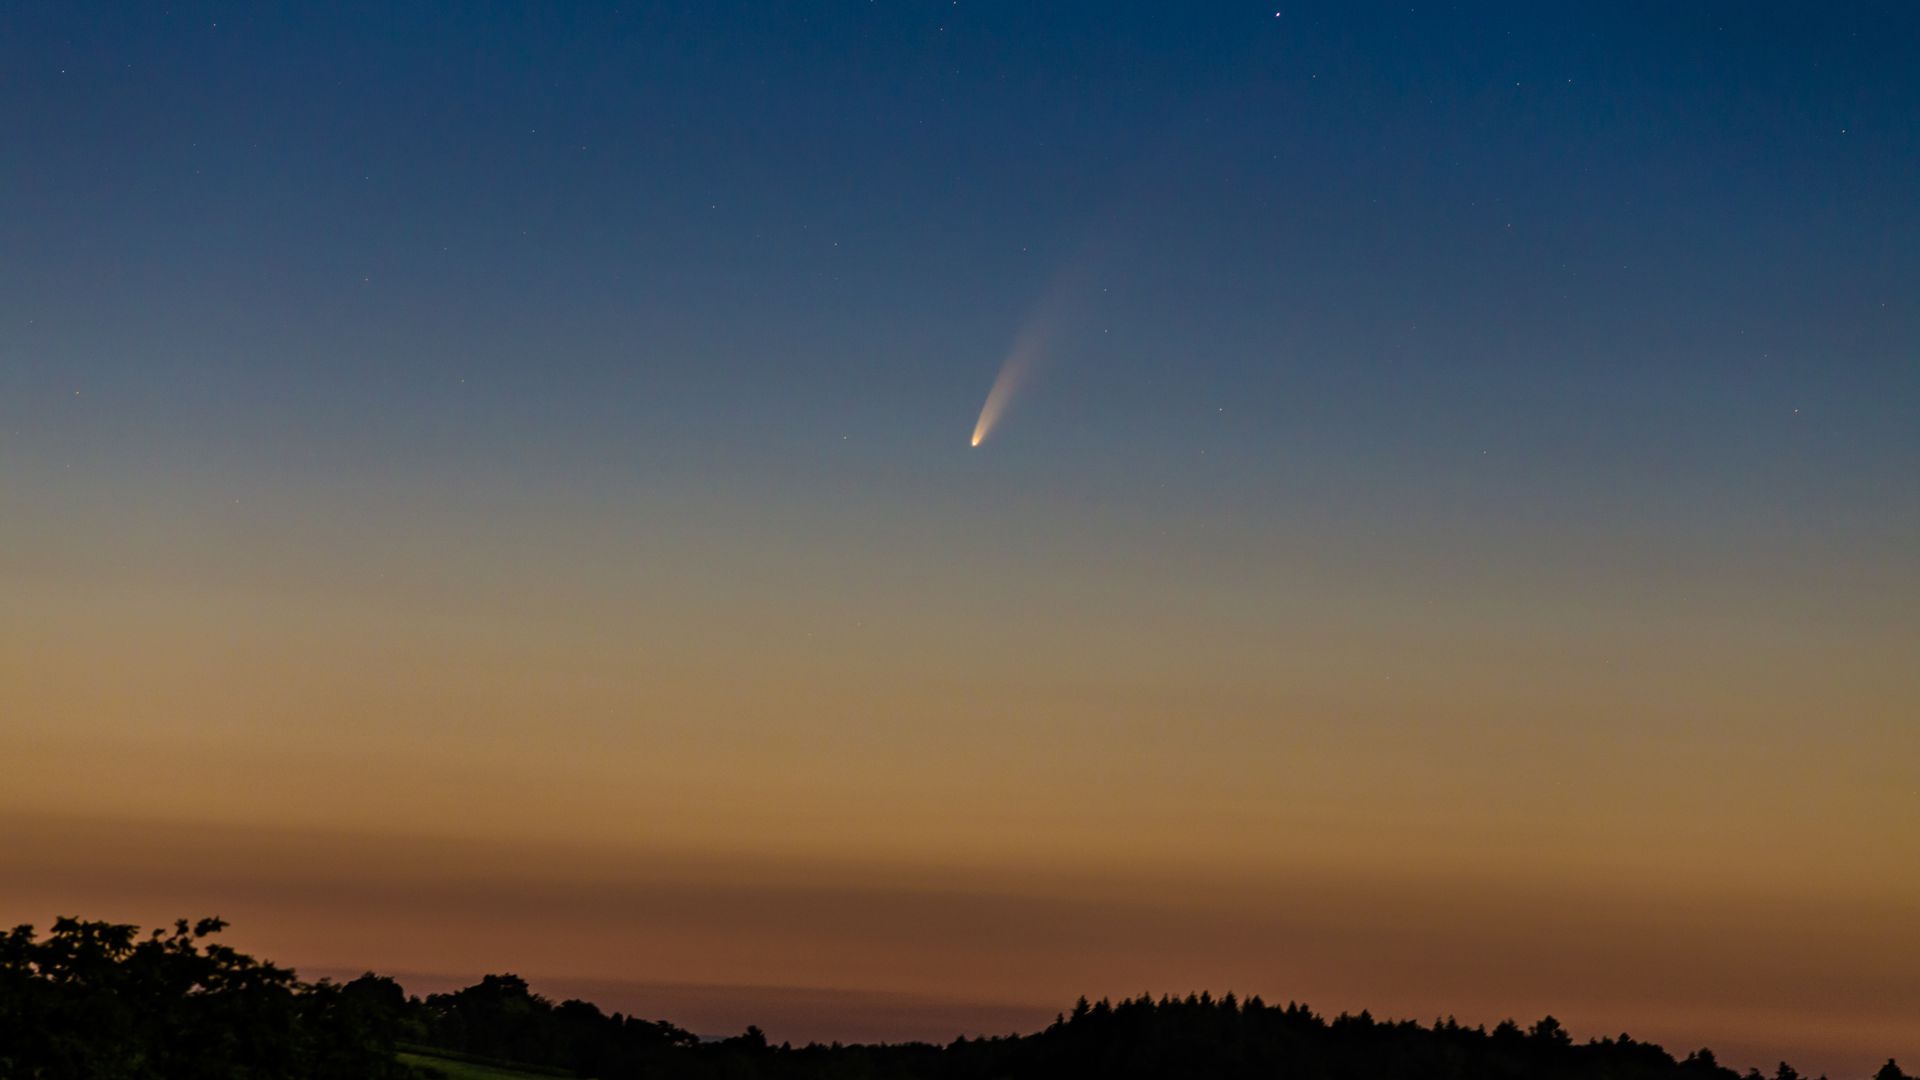 Faszinierendes Schauspiel am nächtlichen Himmel: Dem BNN-Leser Rainer Mannoff gelang diese beeindruckende Aufnahme des Kometen Neowise in der Nähe von Weingarten.